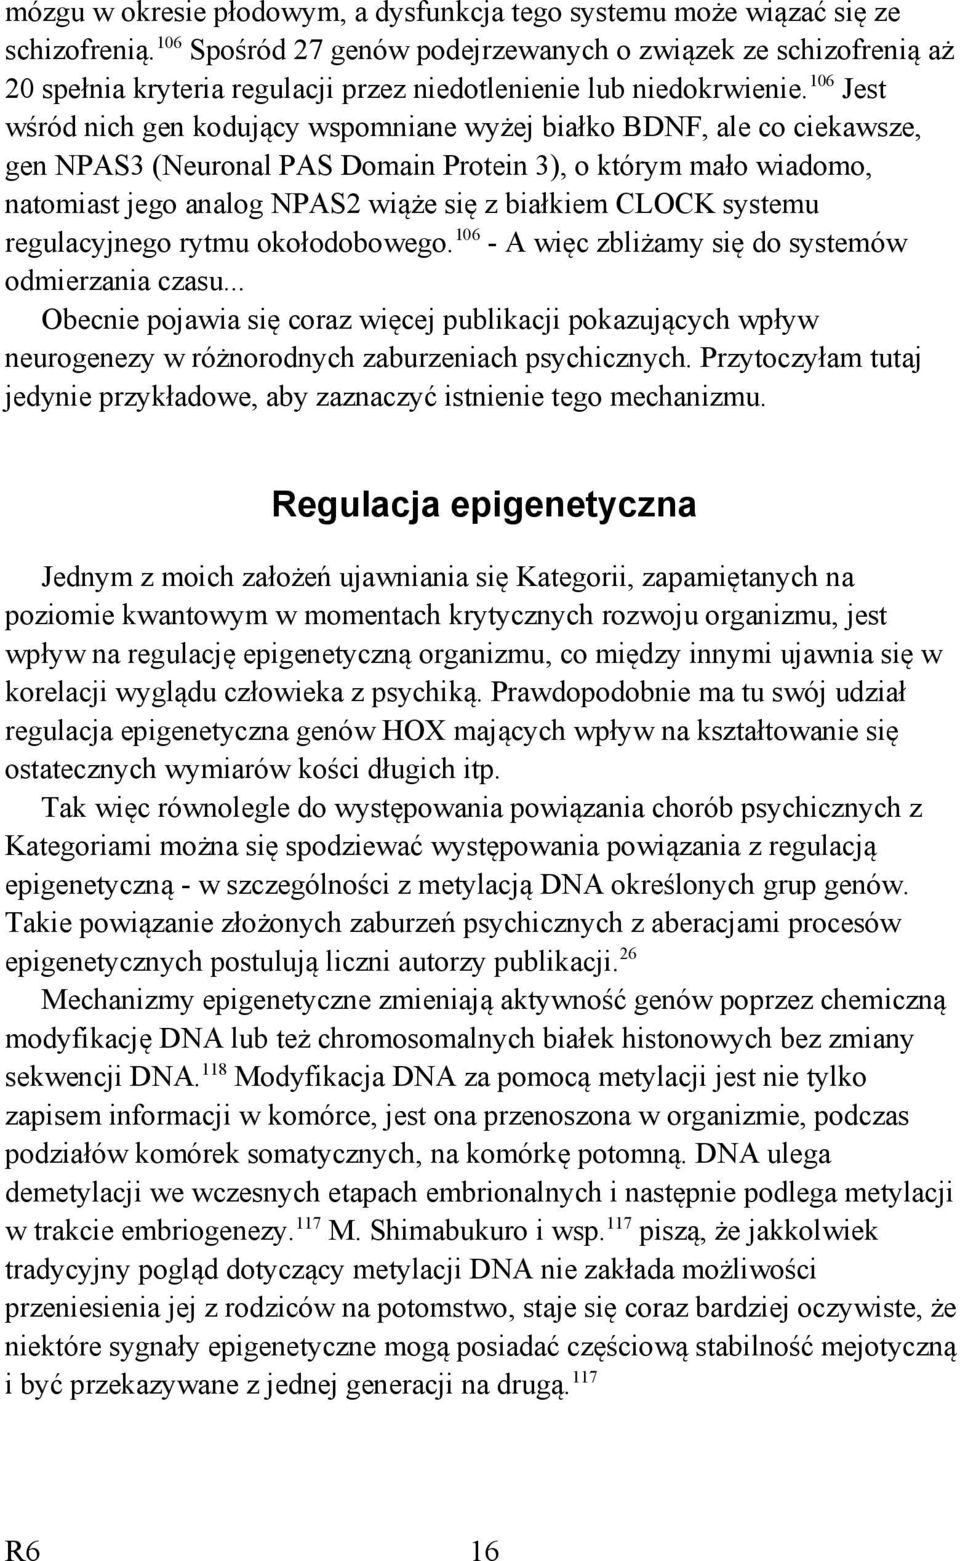 106 Jest wśród nich gen kodujący wspomniane wyżej białko BDNF, ale co ciekawsze, gen NPAS3 (Neuronal PAS Domain Protein 3), o którym mało wiadomo, natomiast jego analog NPAS2 wiąże się z białkiem